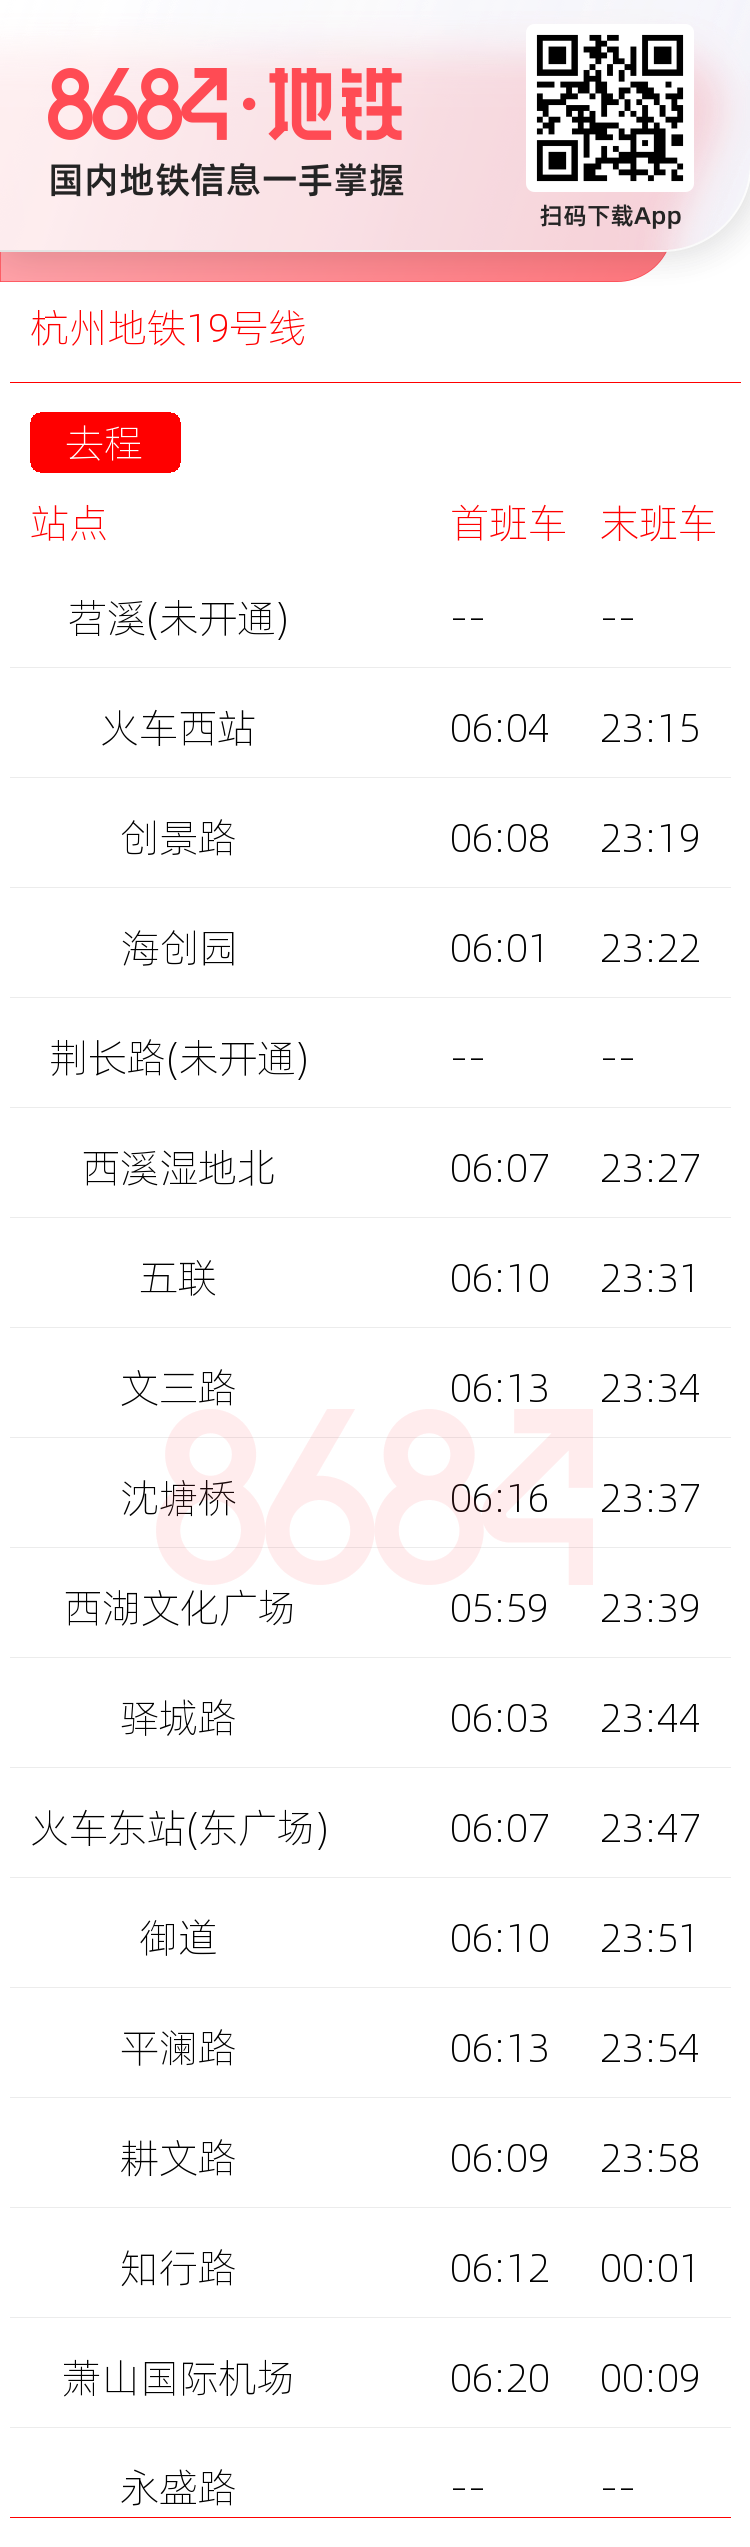 杭州地铁19号线运营时间表